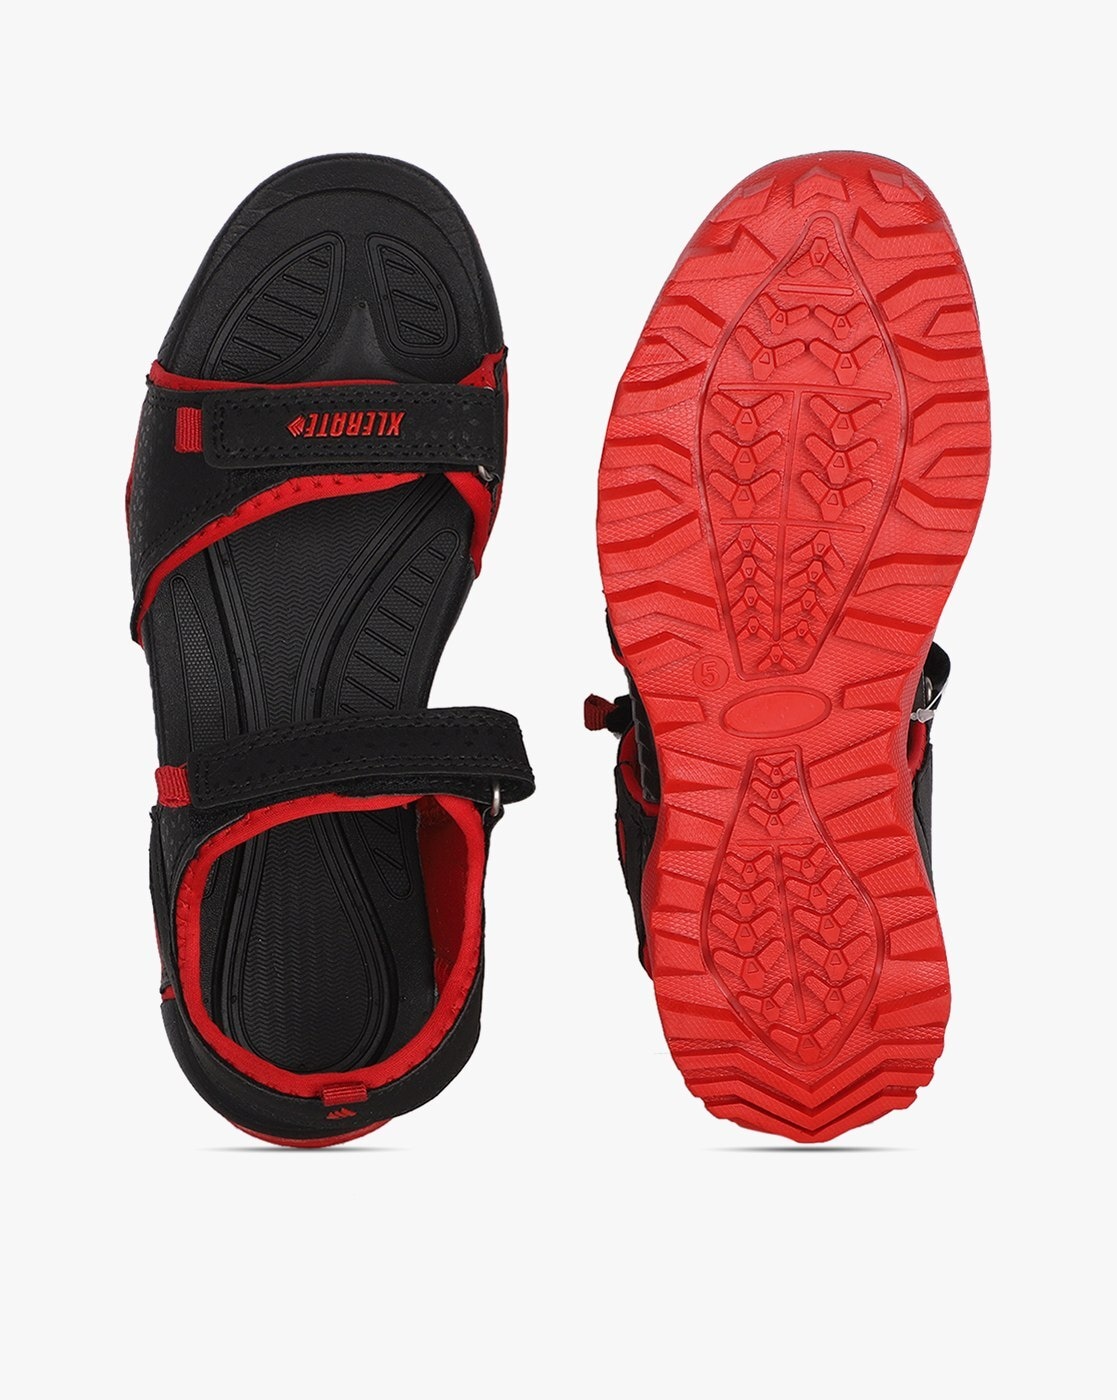 Sparx Sparx Men SS-703 Black Red Floater Sandals Men Black, Red Sandals -  Buy Sparx Sparx Men SS-703 Black Red Floater Sandals Men Black, Red Sandals  Online at Best Price - Shop